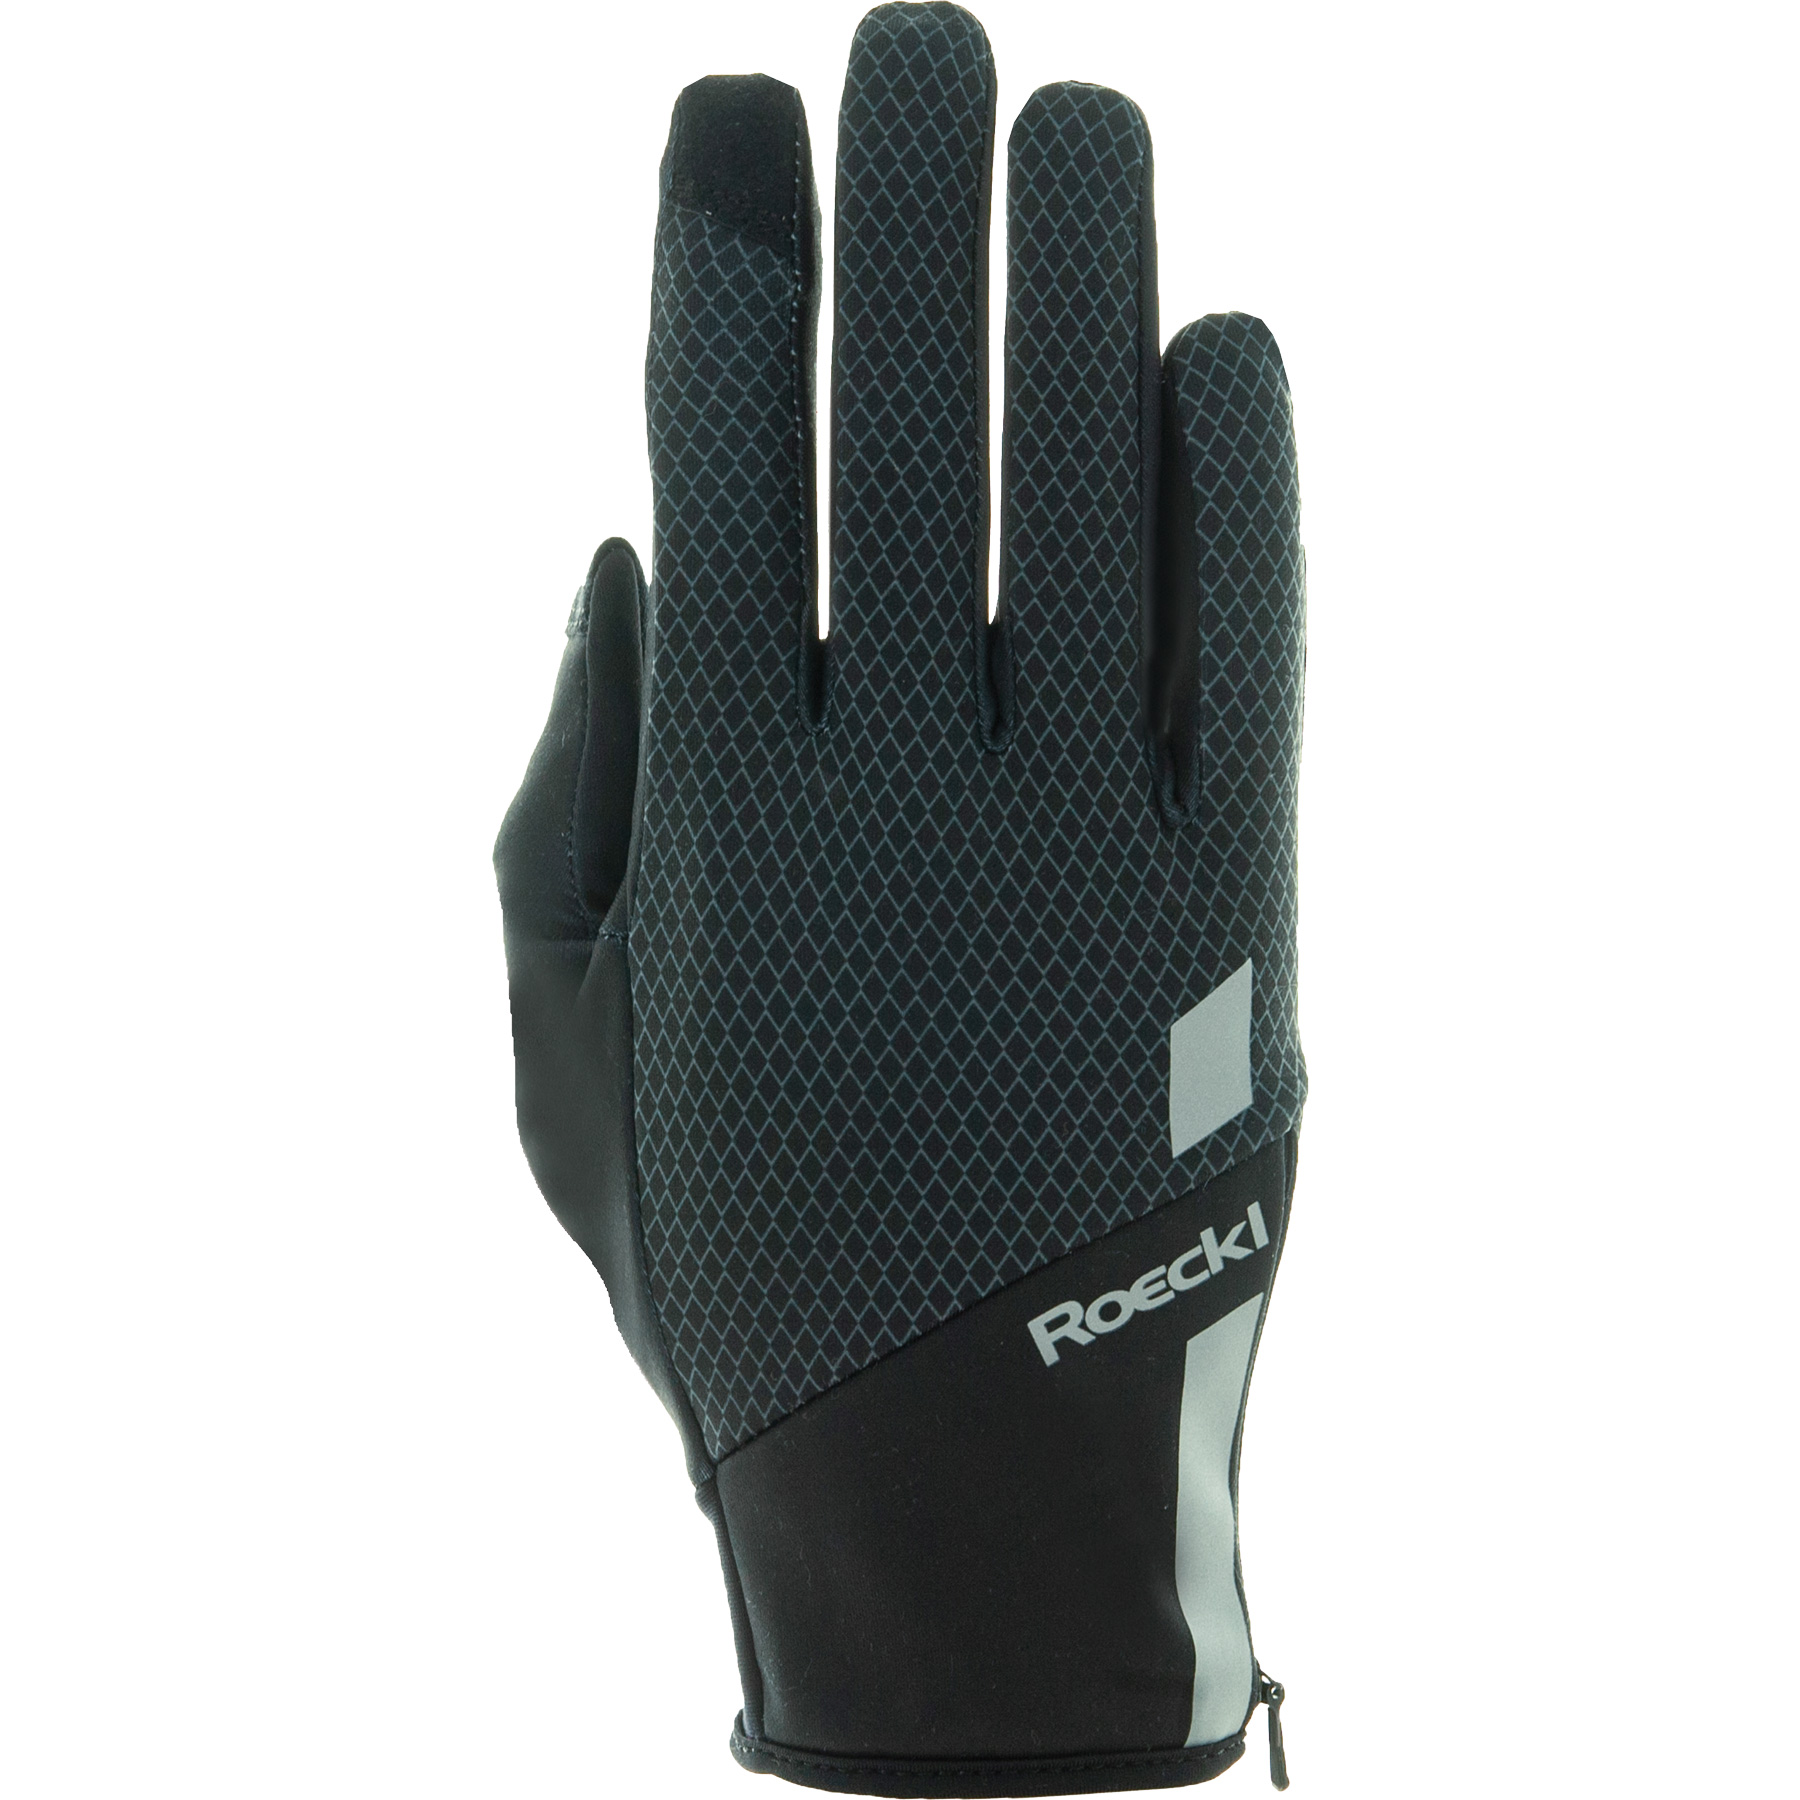 Productfoto van Roeckl Sports Jarvis Hardloop-Handschoenen - zwart 0999